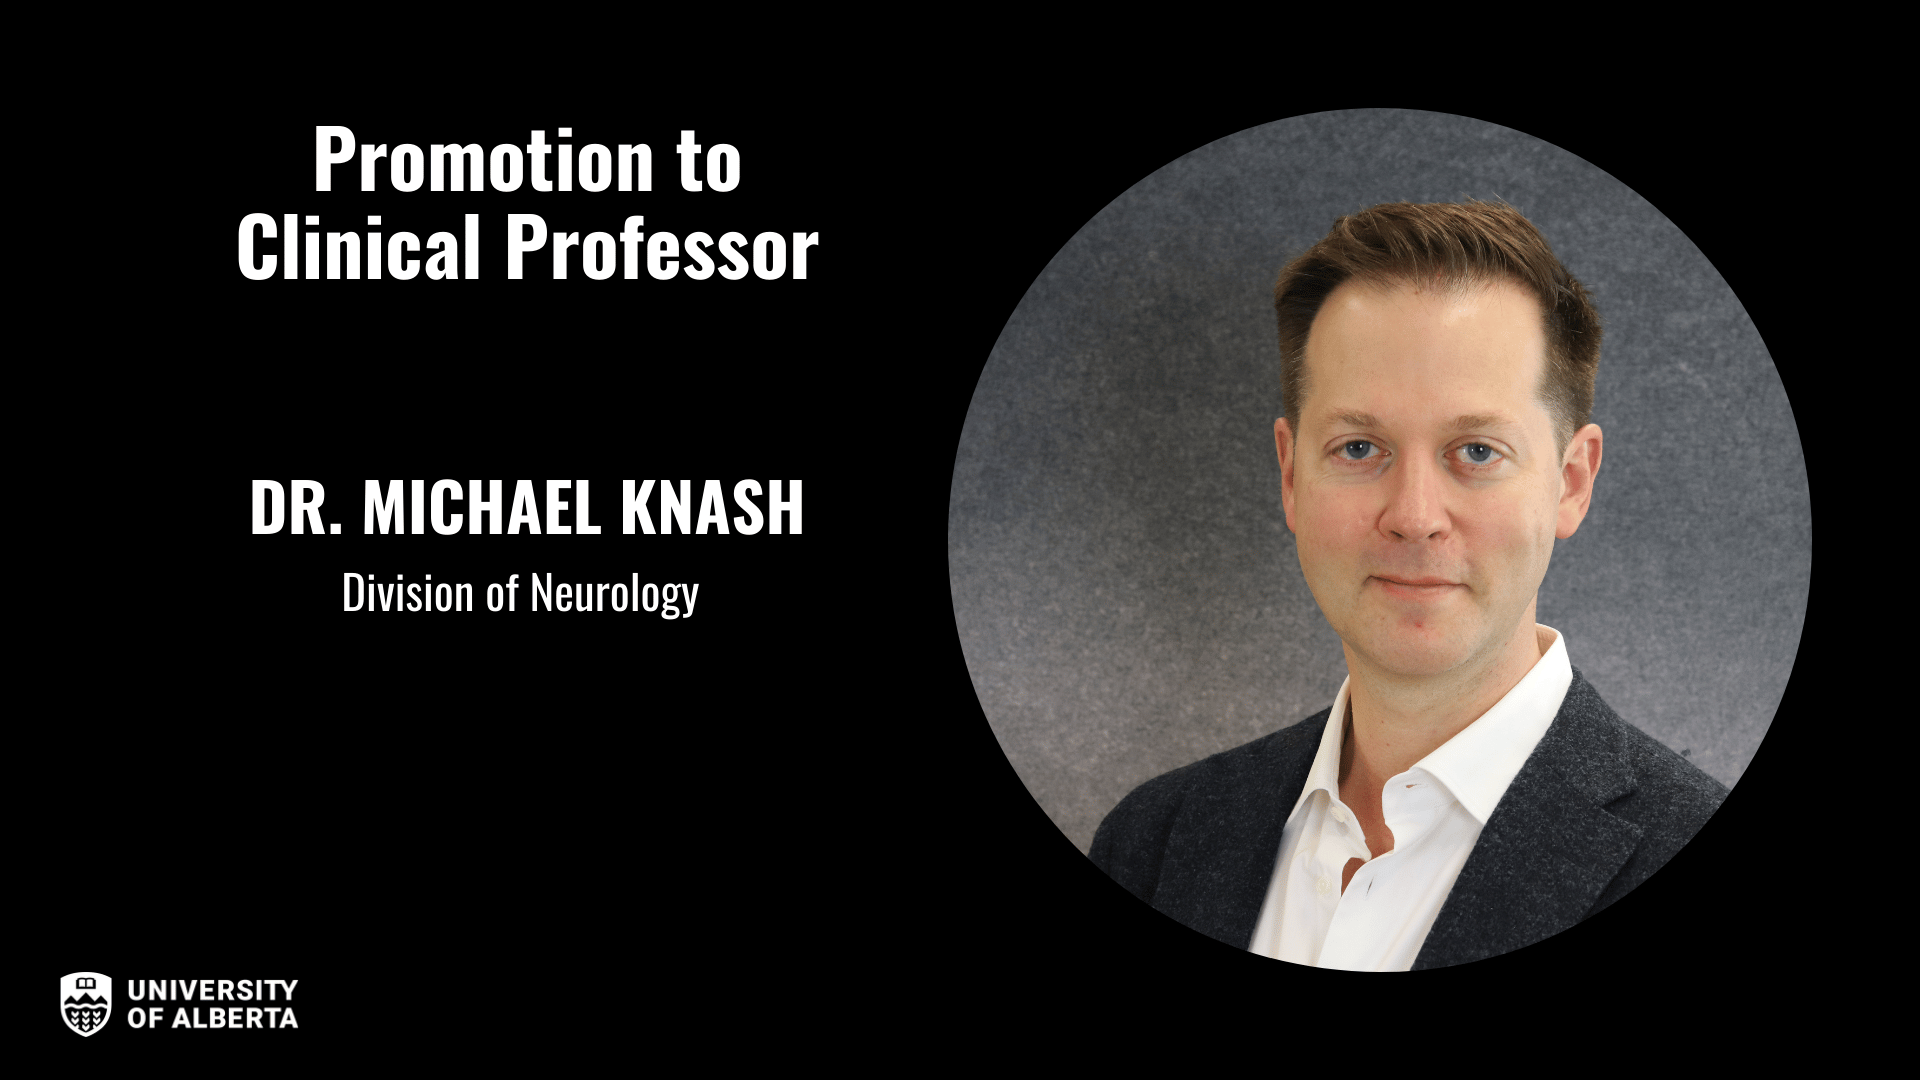 Dr. Michael Knash